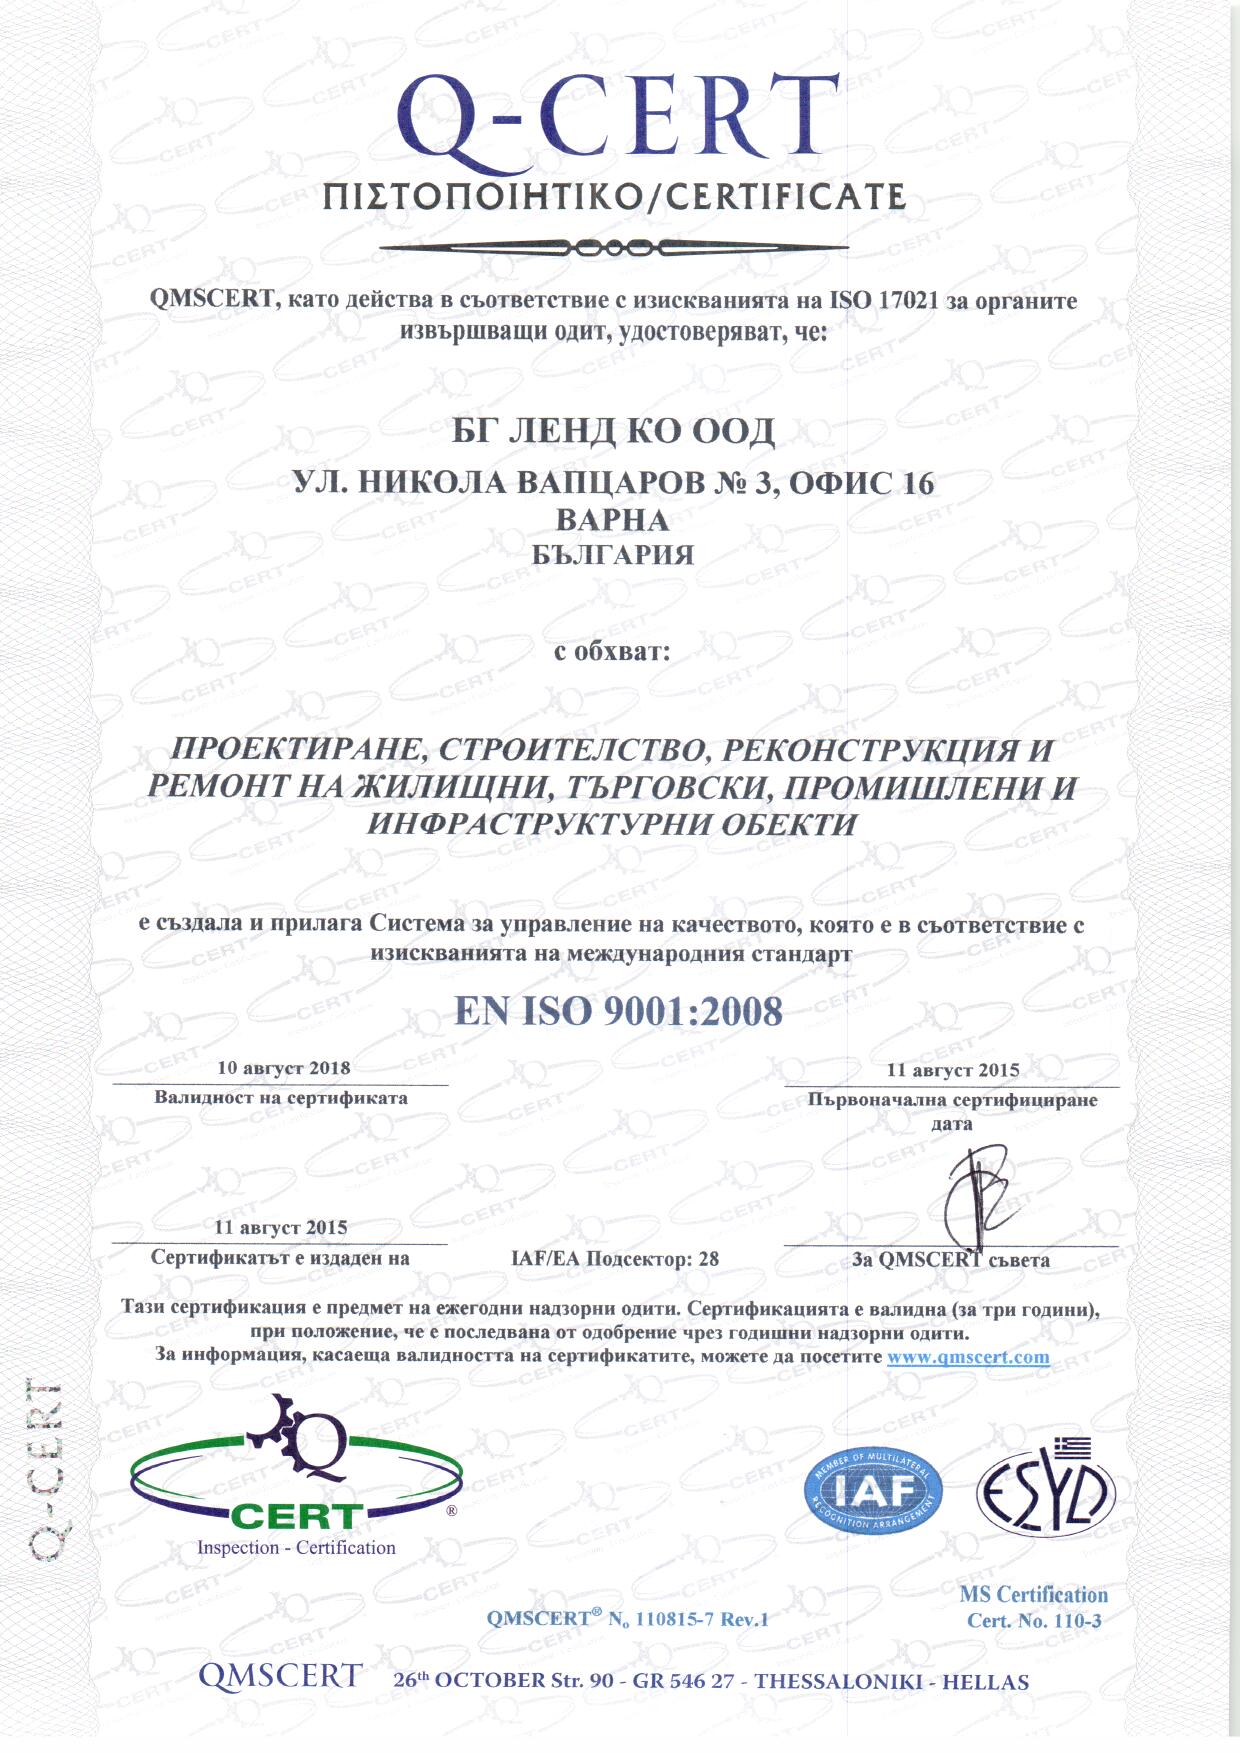 Q-CERT ISO 9001:2008